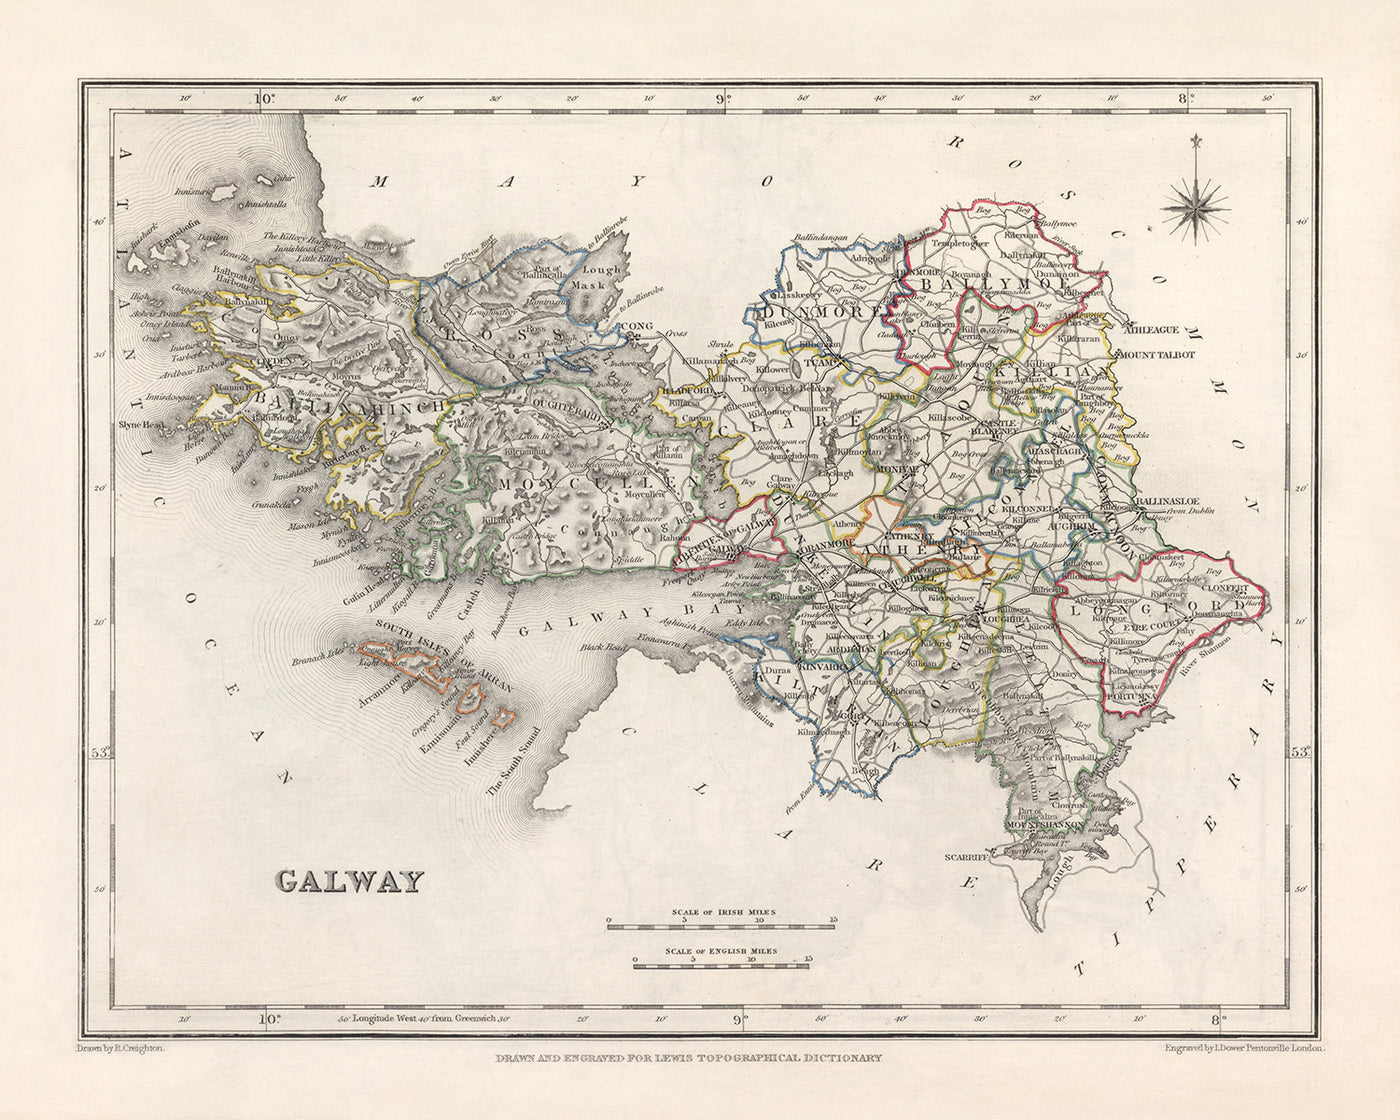 Alte Karte der Grafschaft Galway von Samuel Lewis, 1844: Athenry, Ballinasloe, Clifden, Gort, Loughrea